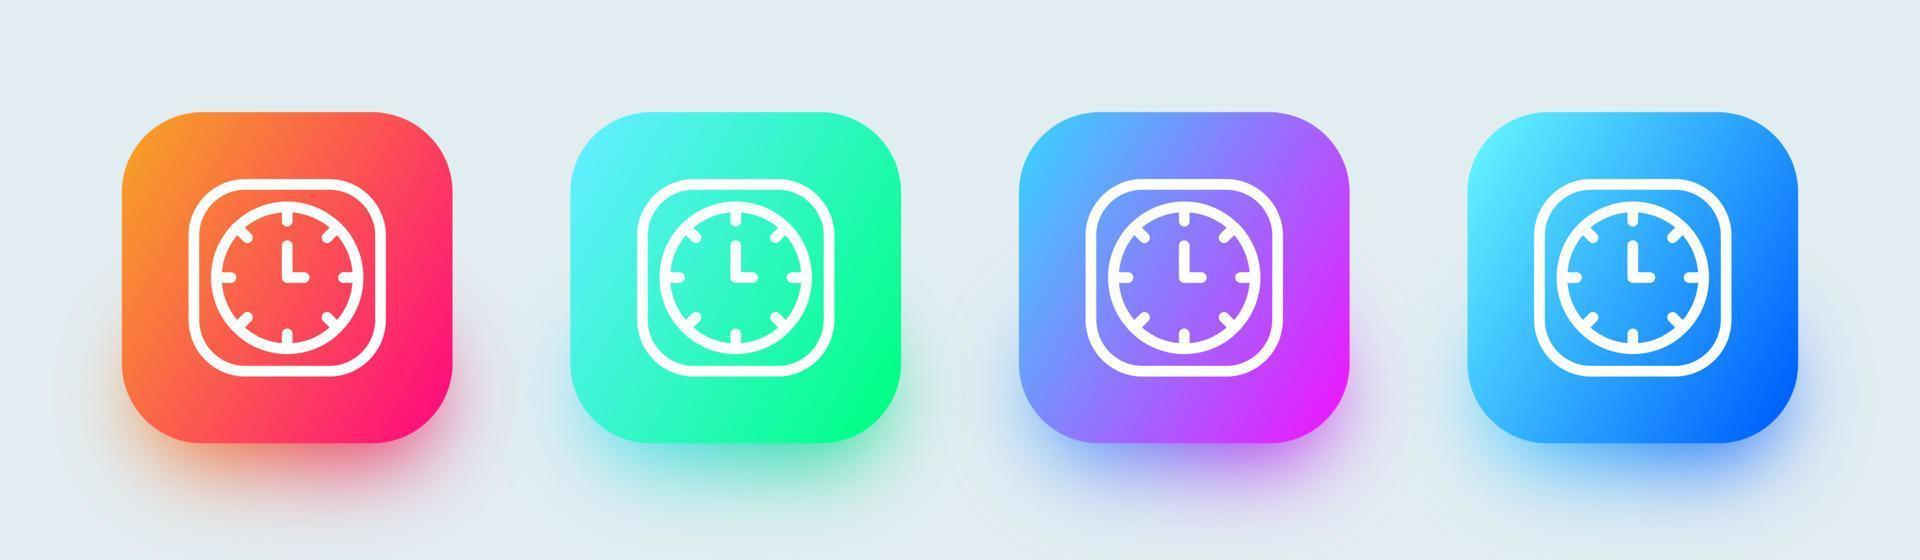 Uhrenliniensymbol in quadratischen Farbverläufen. Zeitzeichen-Vektor-Illustration vektor